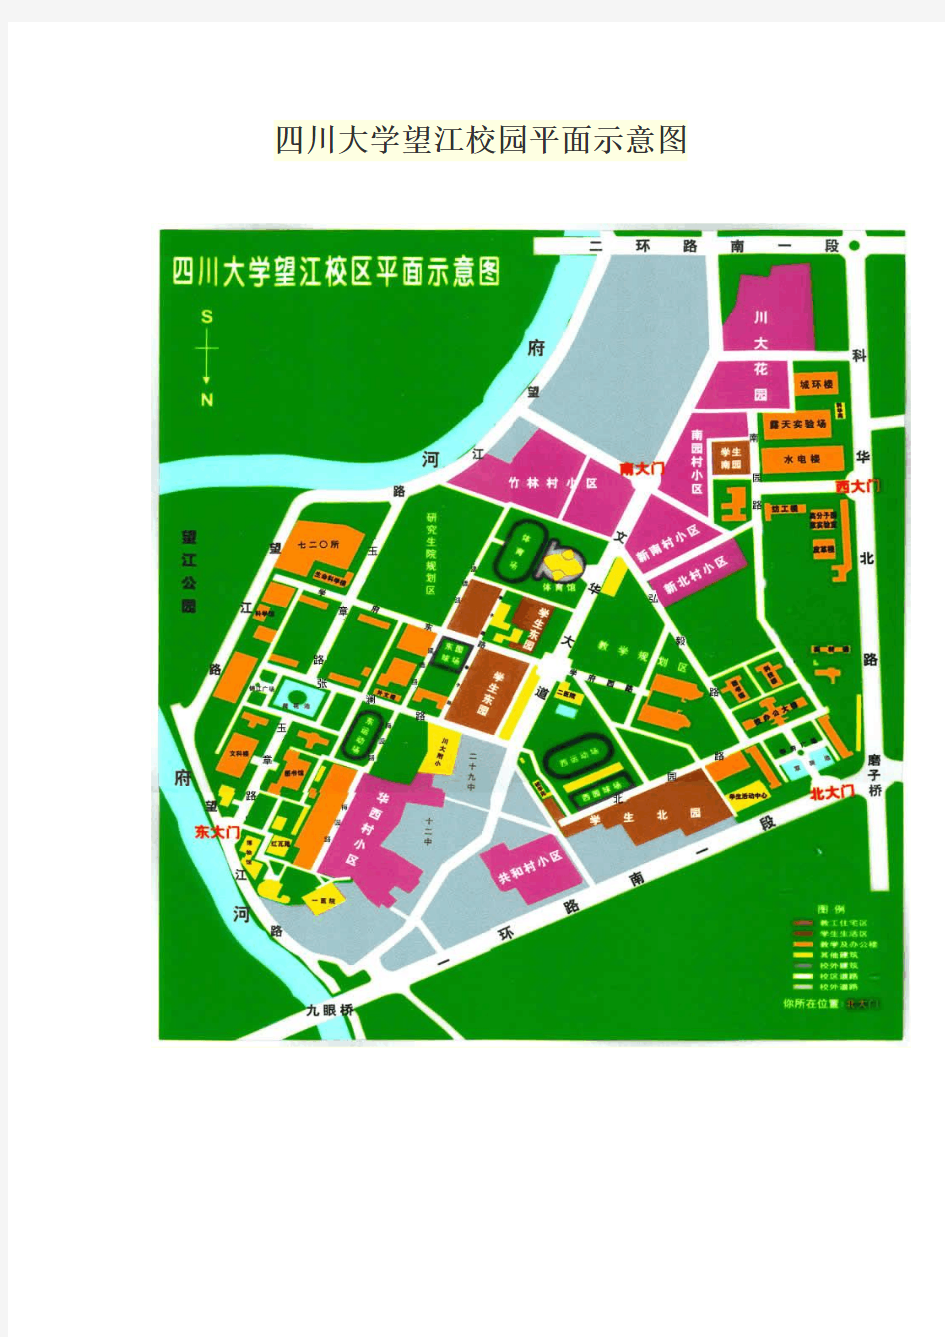 四川大学望江校园平面示意图